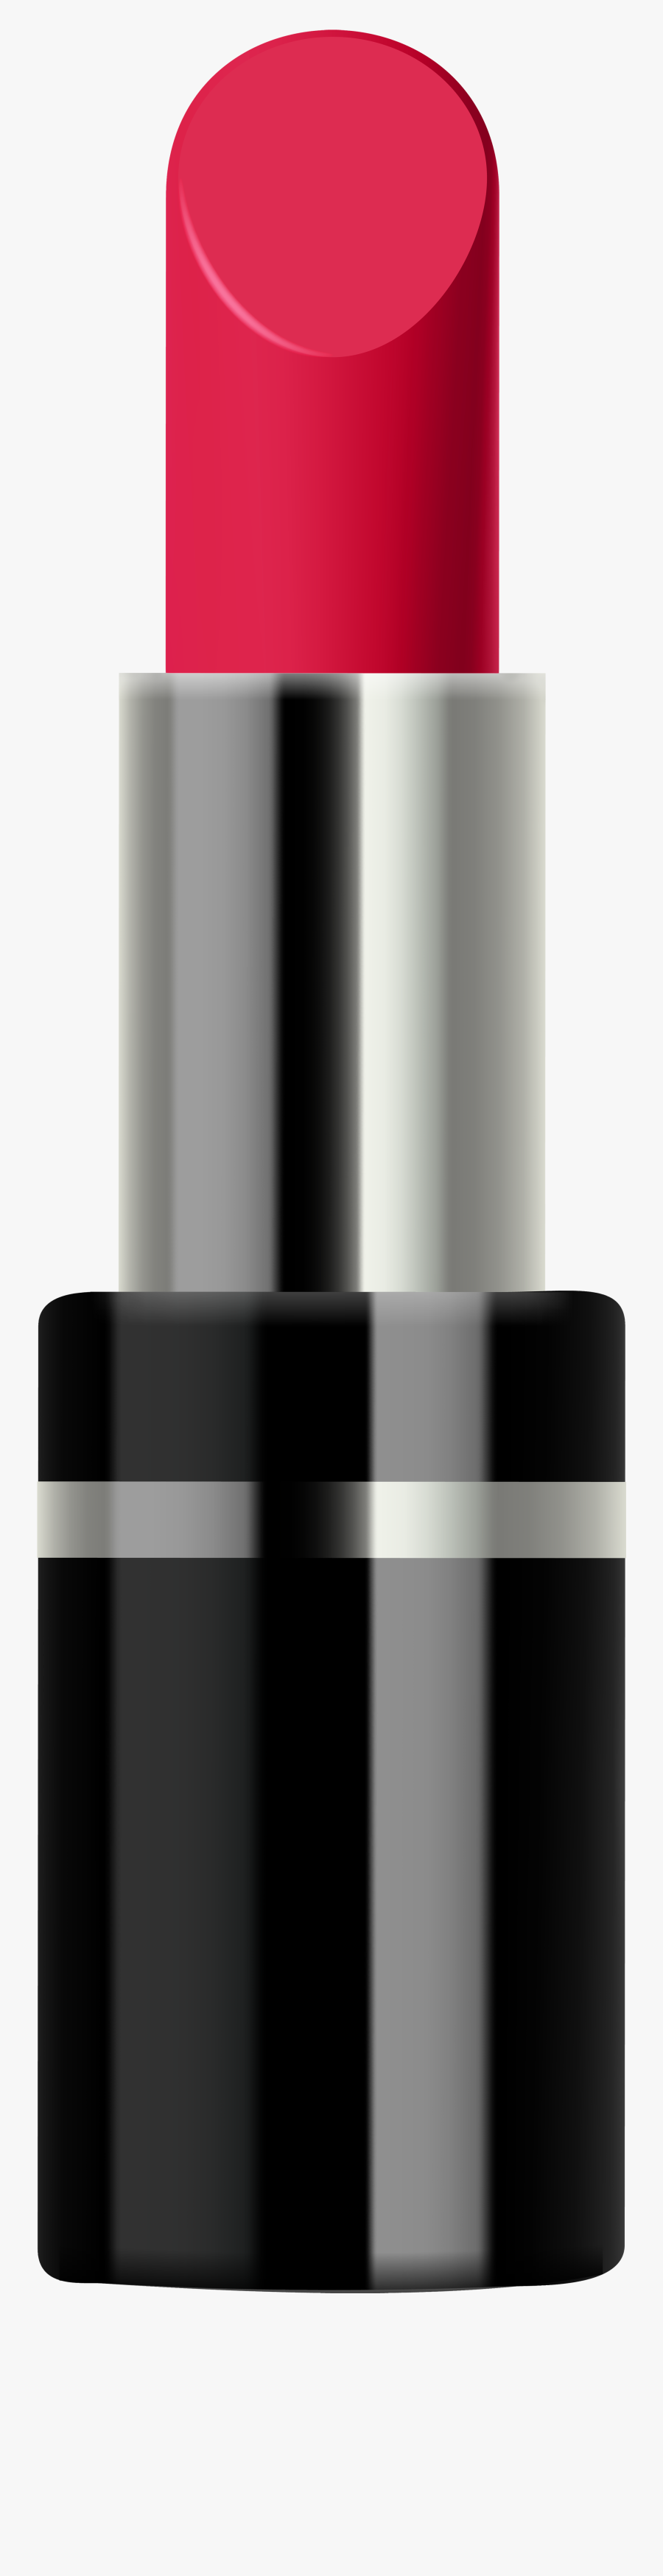 Lipstick Clipart Png - Monochrome, Transparent Clipart